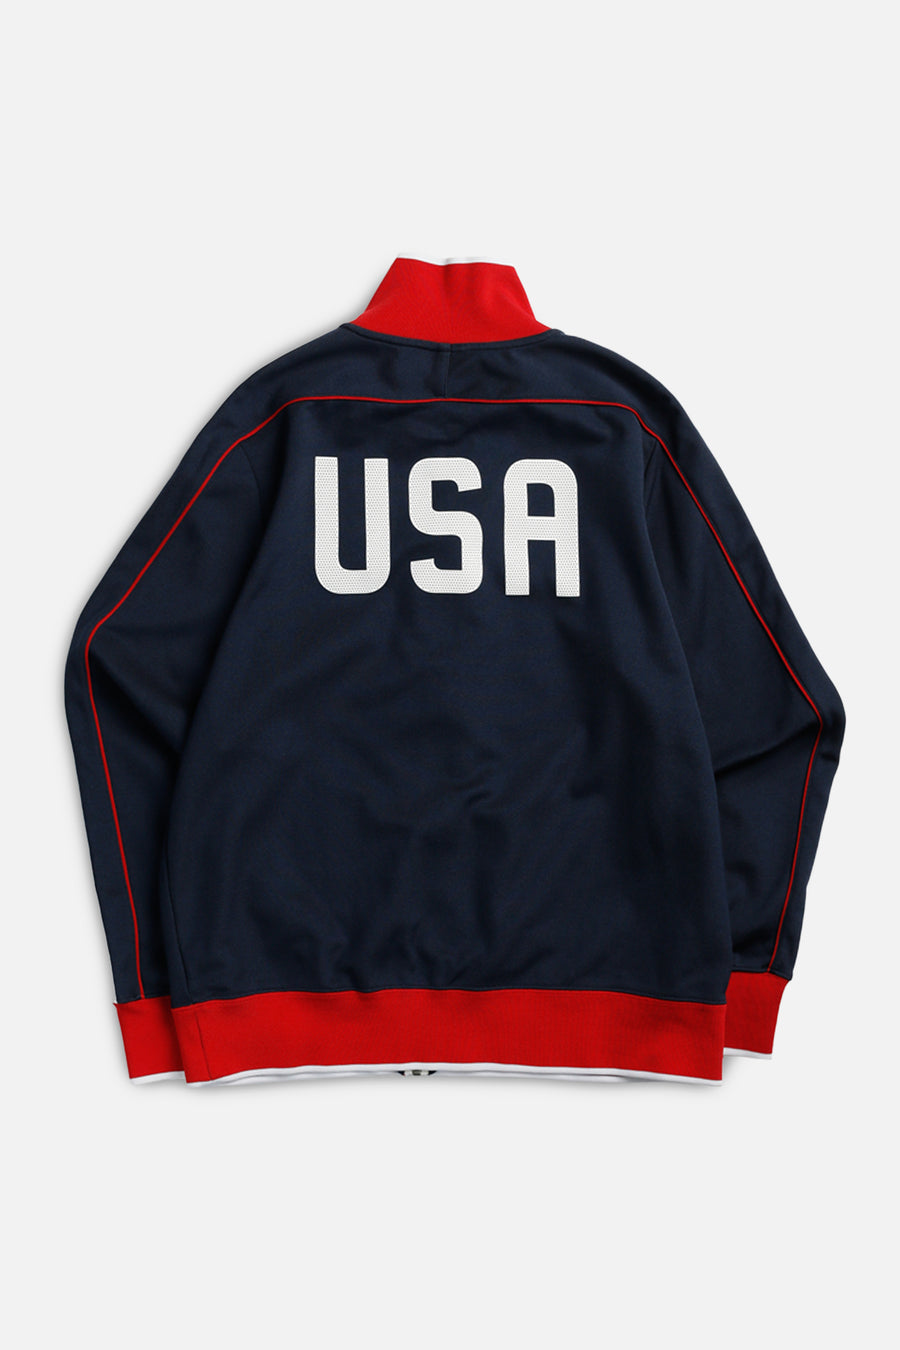 Vintage USA Soccer Track Jacket - L